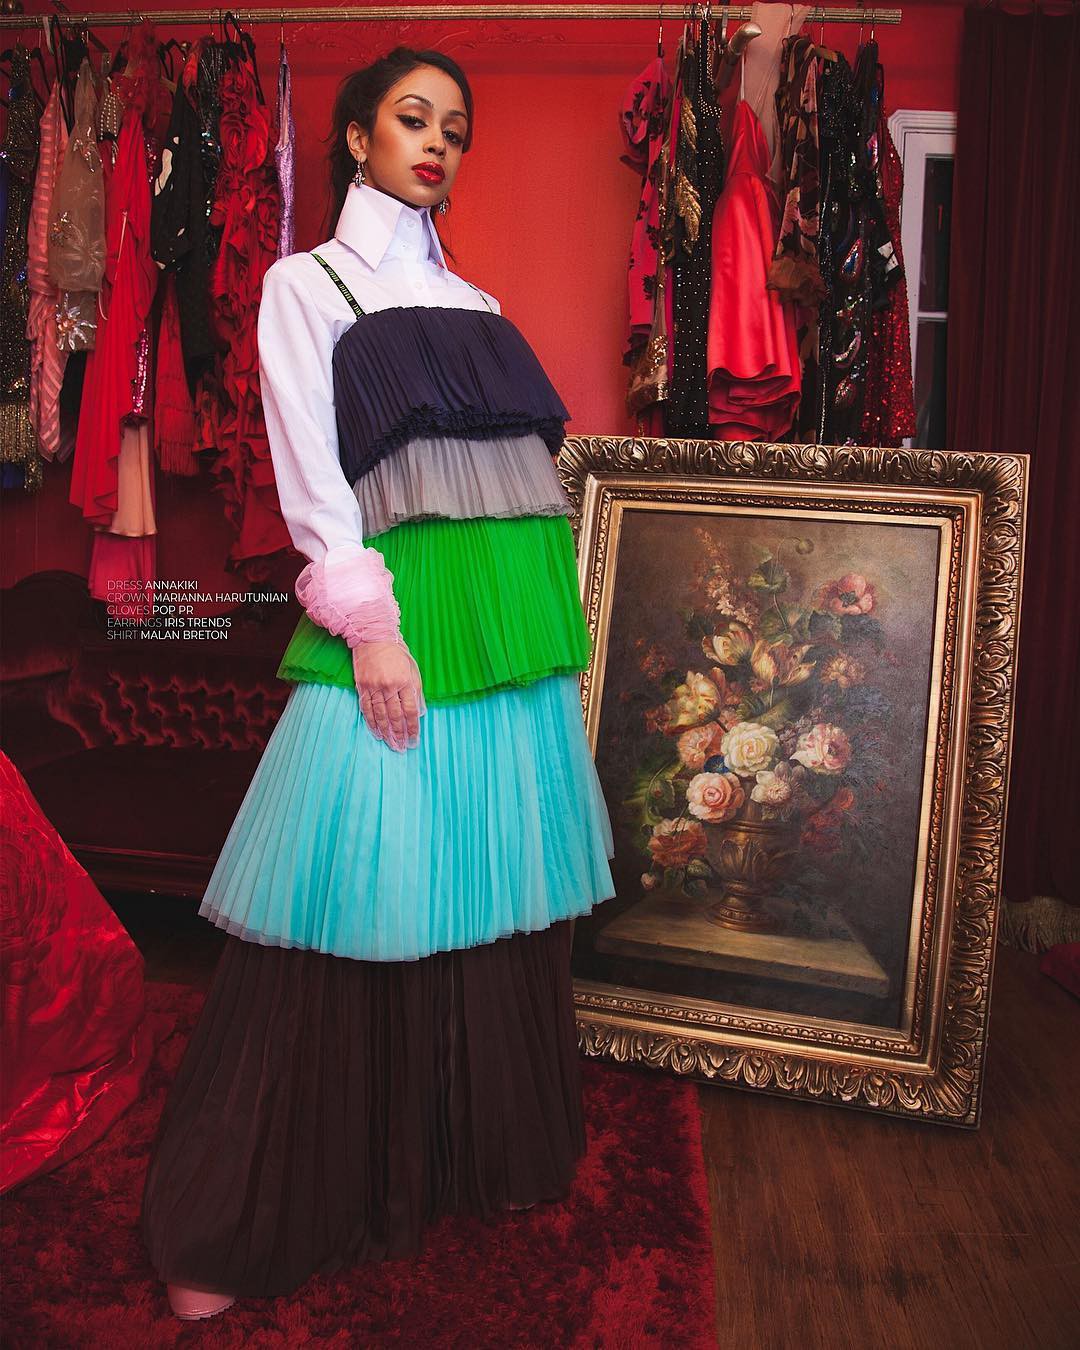 Vestimenta formal magenta y verde, consejos de moda.: Fotografía de moda,  Liza Koshy  